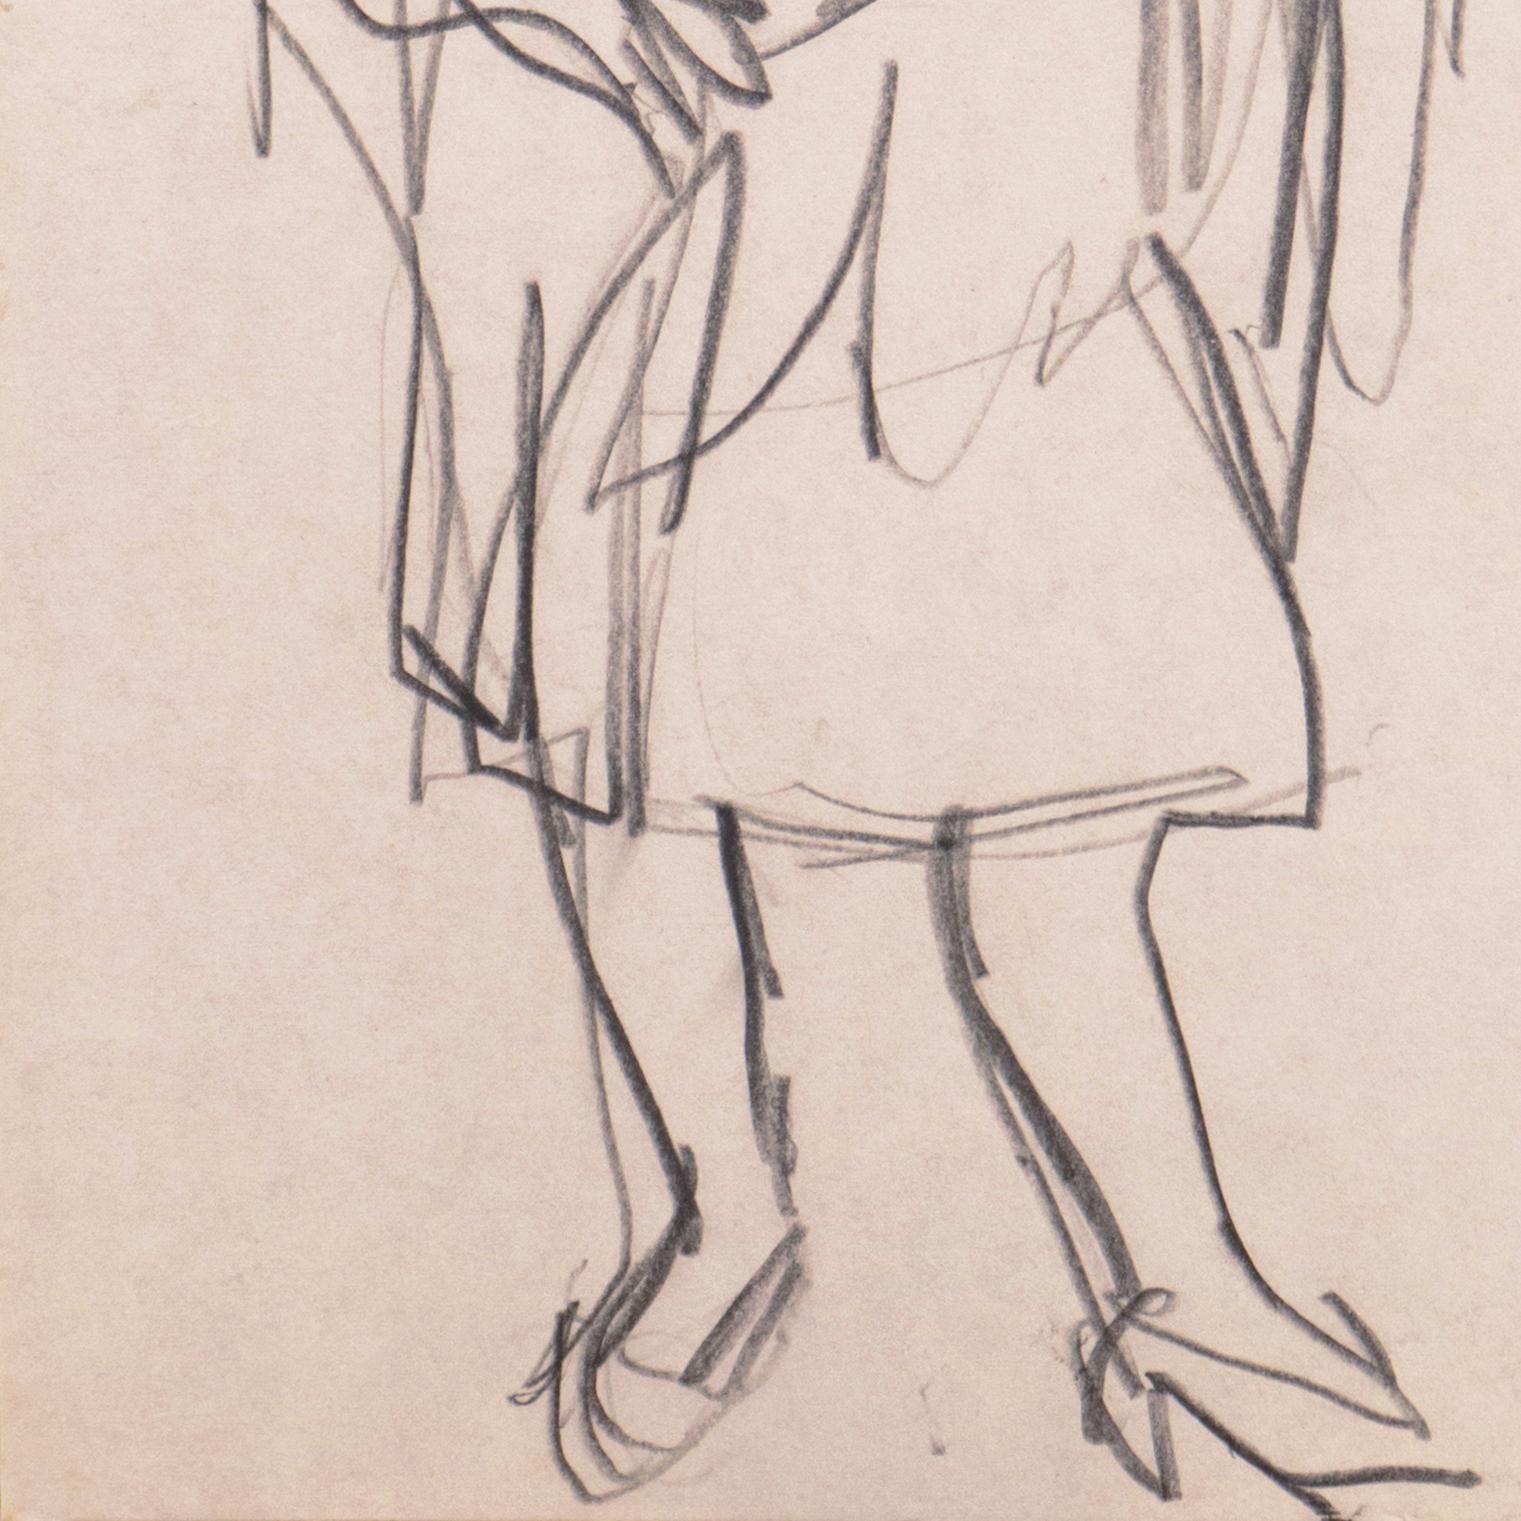 Verso gestempelt mit dem Nachlassstempel von Victor Di Gesu (Amerikaner, 1914-1988), geschaffen um 1950.

Eine dynamische und lockere Figur, die eine Frau im Kontrapost zeigt, die in einen Schal gehüllt ist und kurze Pumps trägt. 

Victor di Gesu,